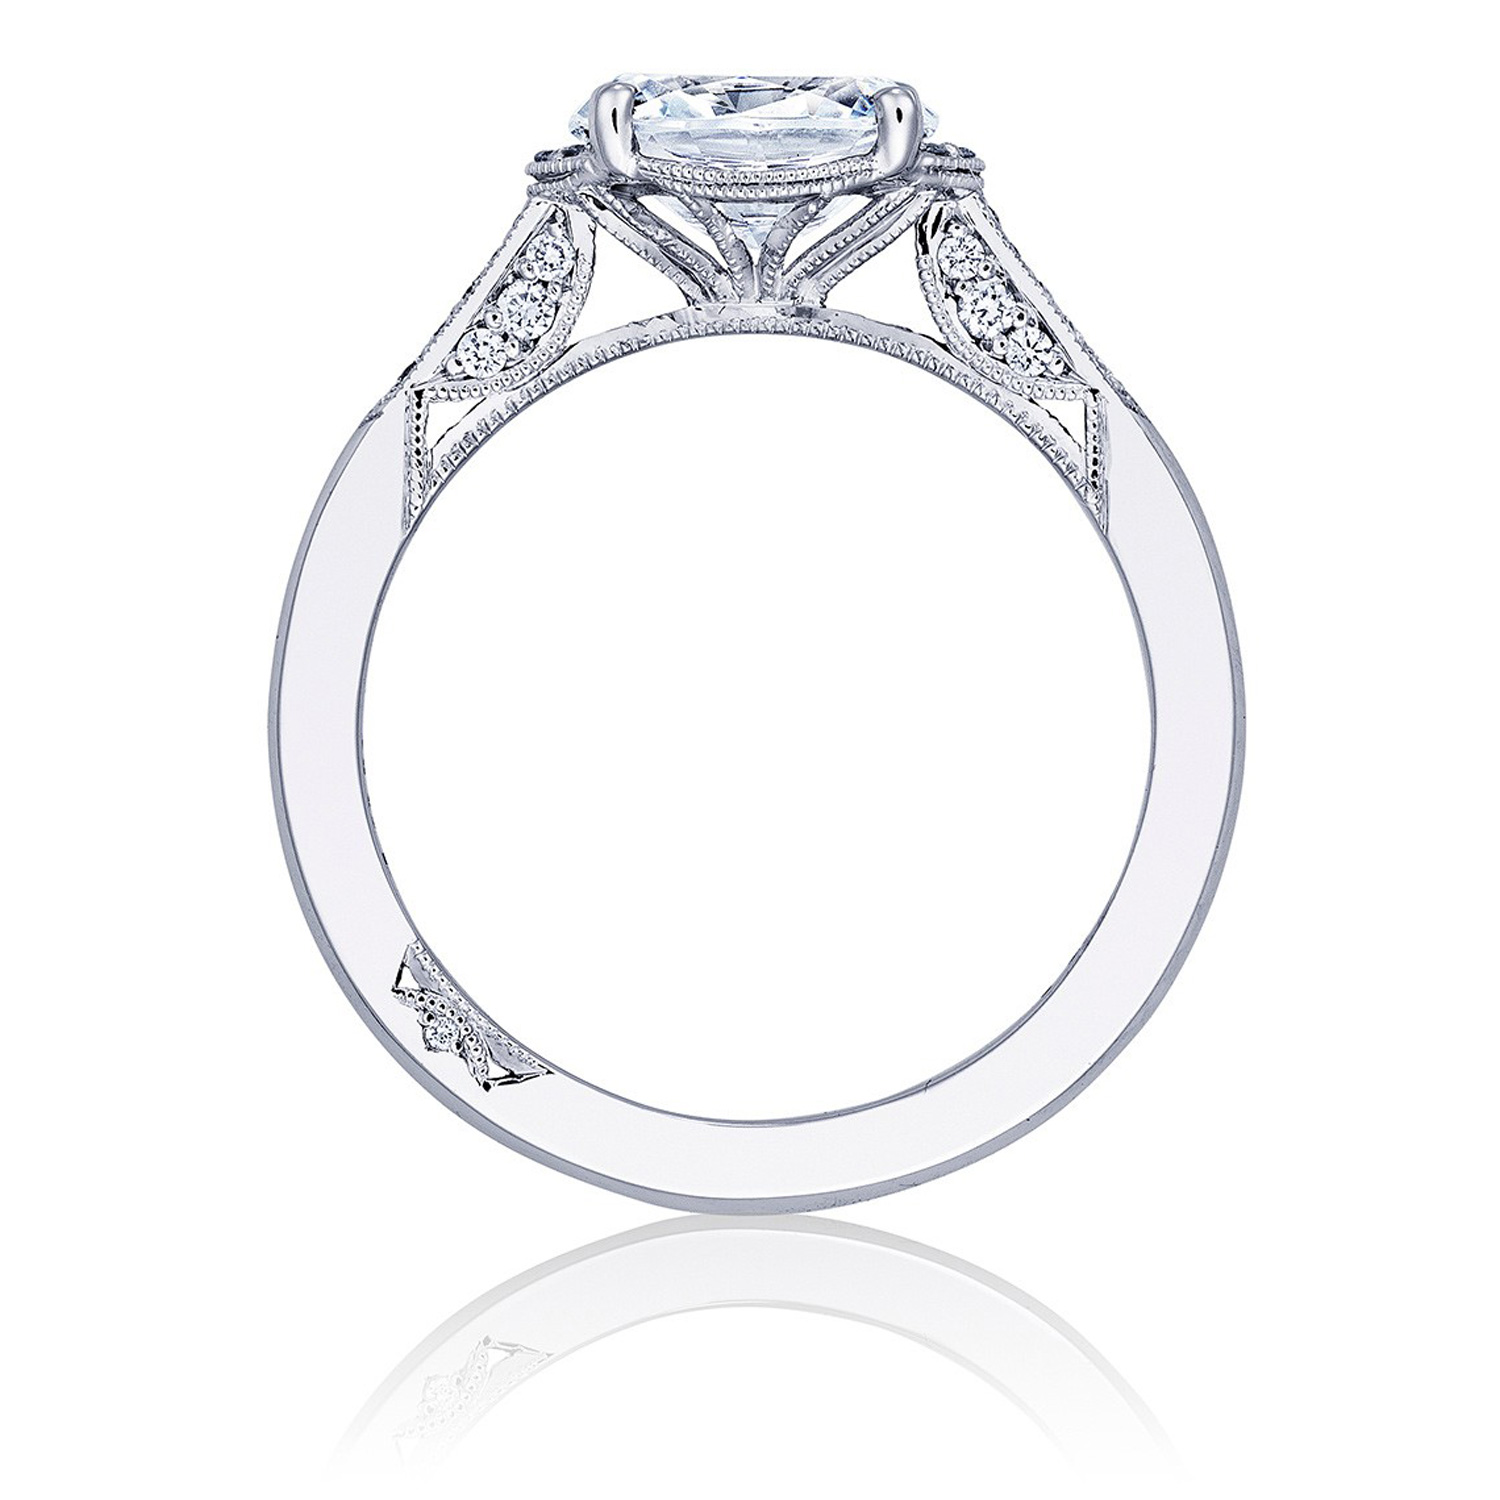 2655OV8X6 Platinum Simply Tacori Engagement Ring